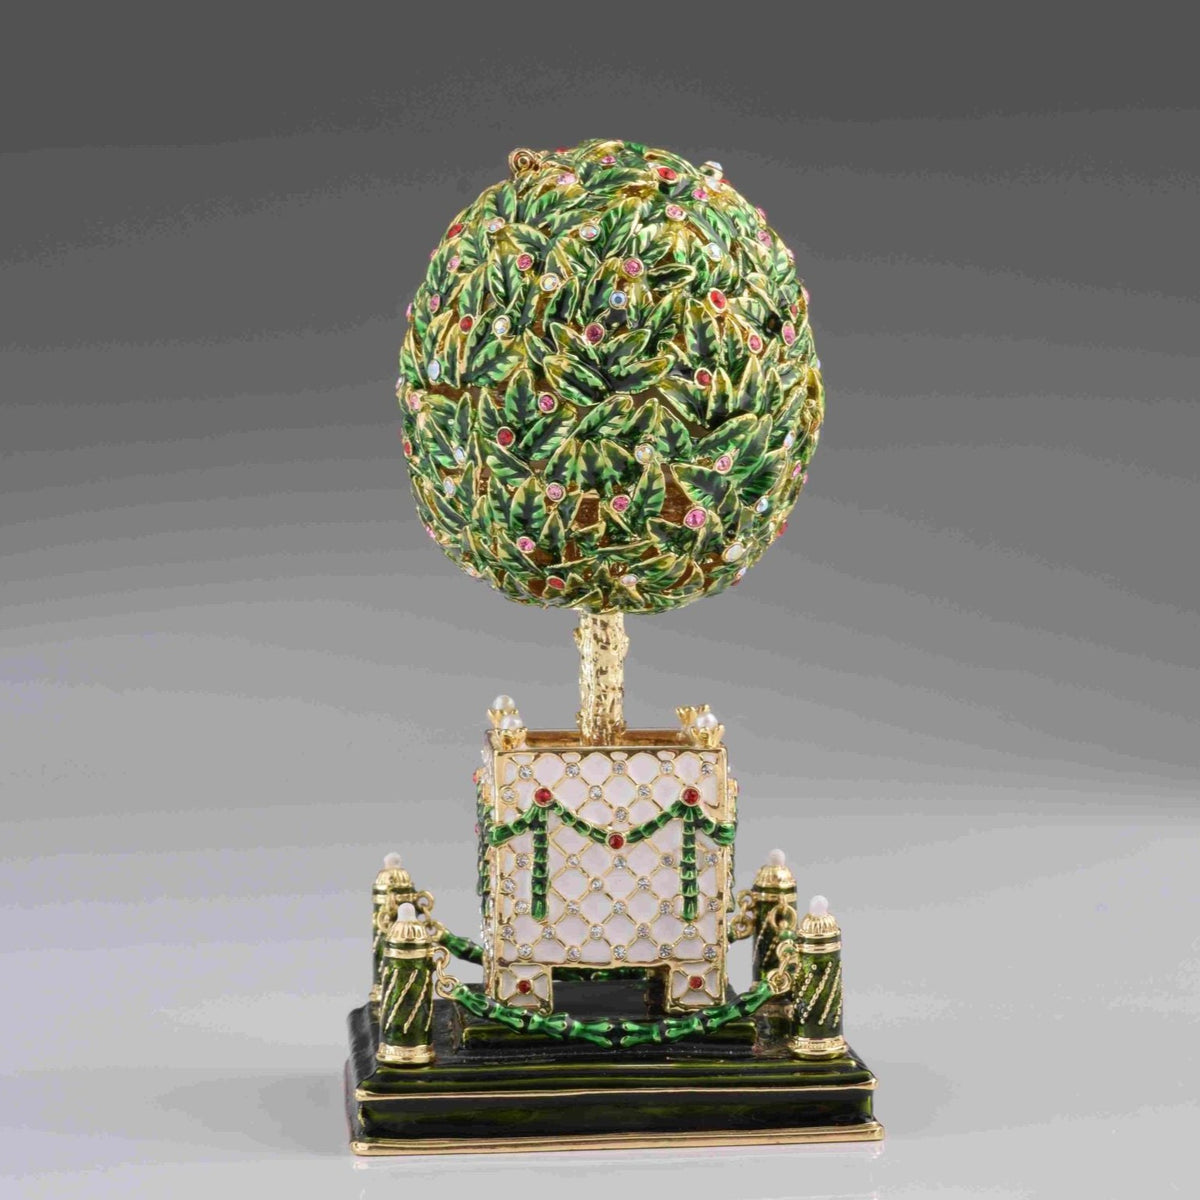 Oeuf de Fabergé de laurier avec cristaux colorés